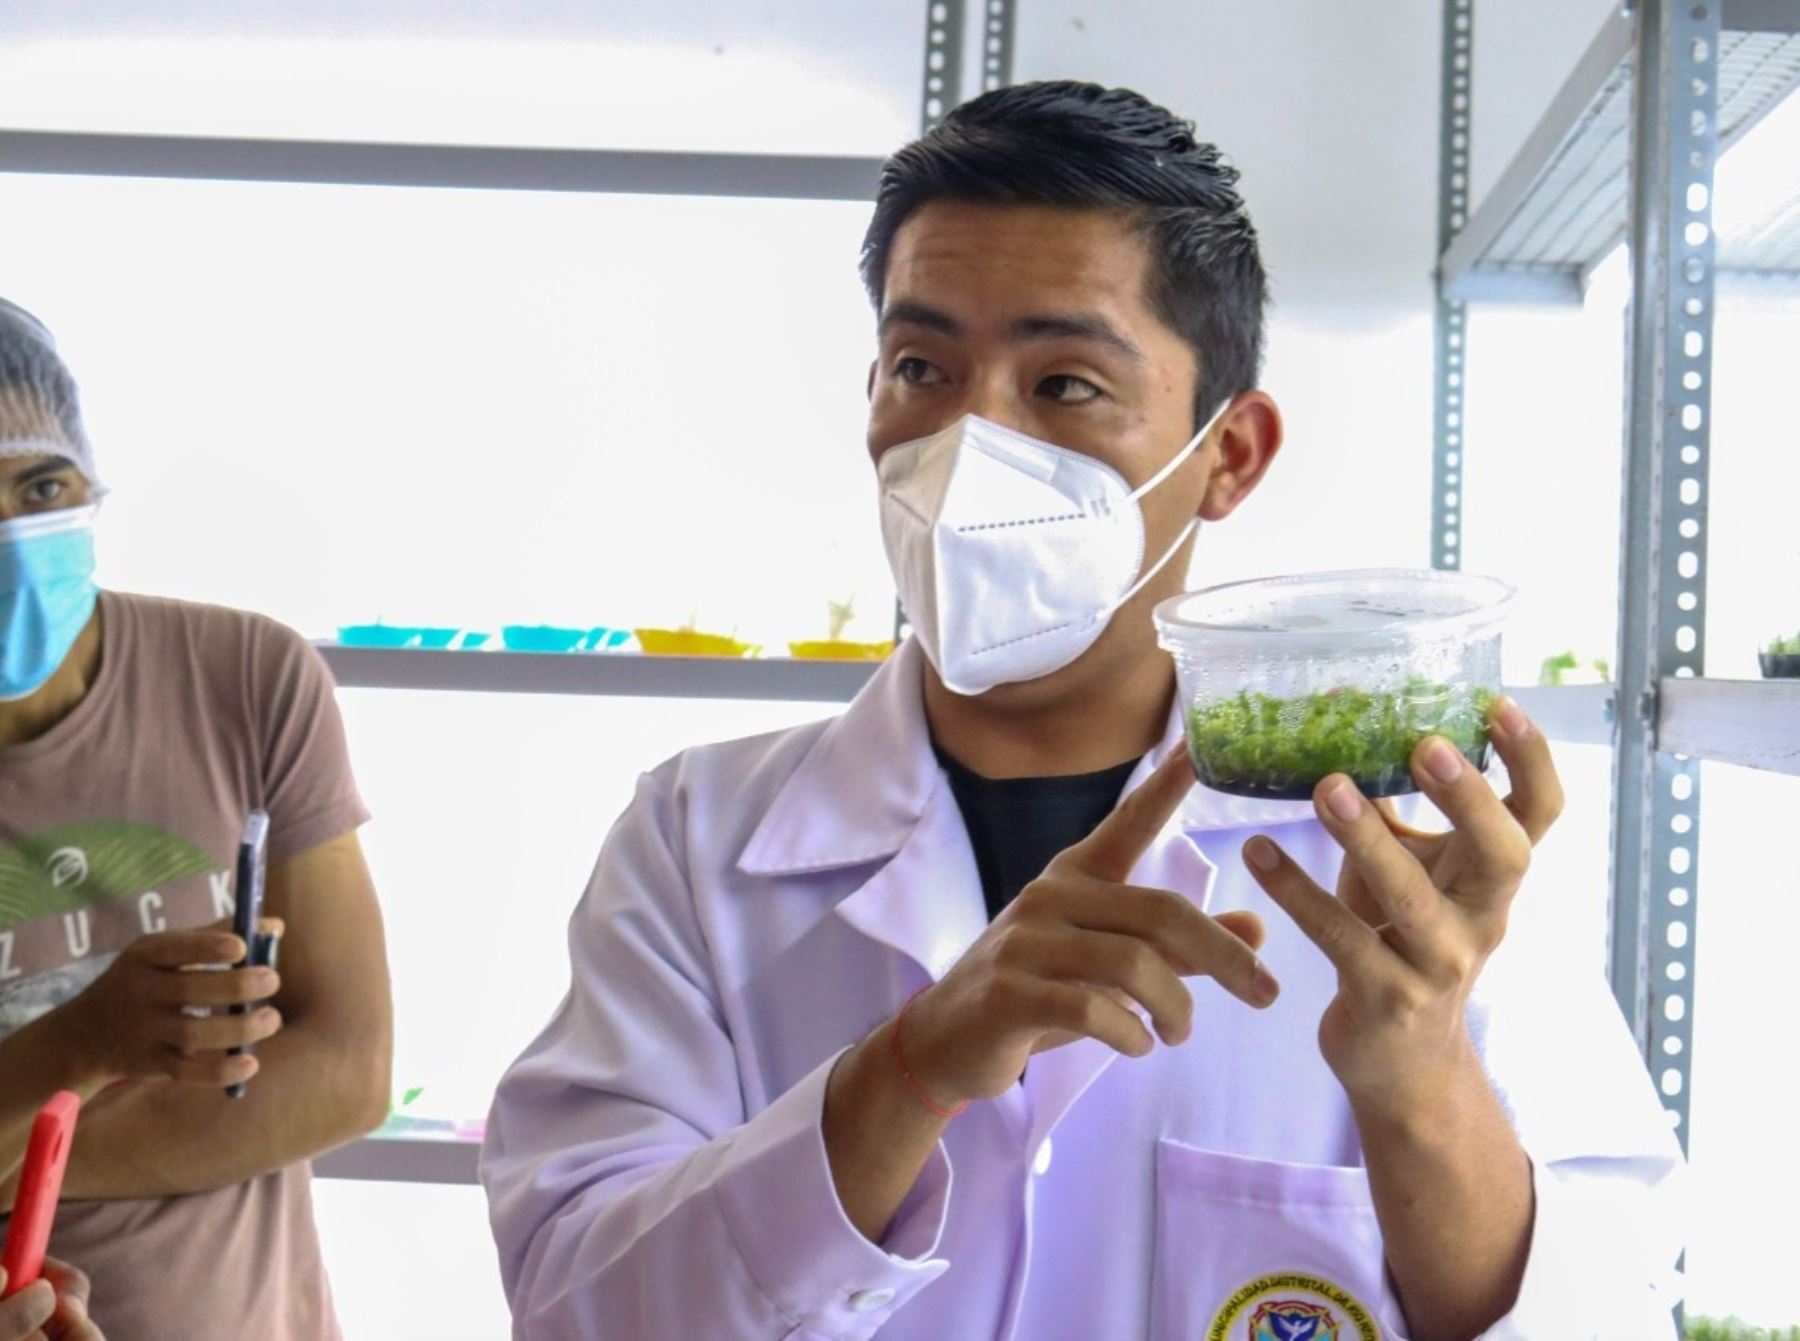 Laboratorio municipal del distrito de Río Negro, ubicado en la provincia de Satipo, logró reproducir hijuelos de pitahaya, una cotizada fruta que se cultiva en esa zona.